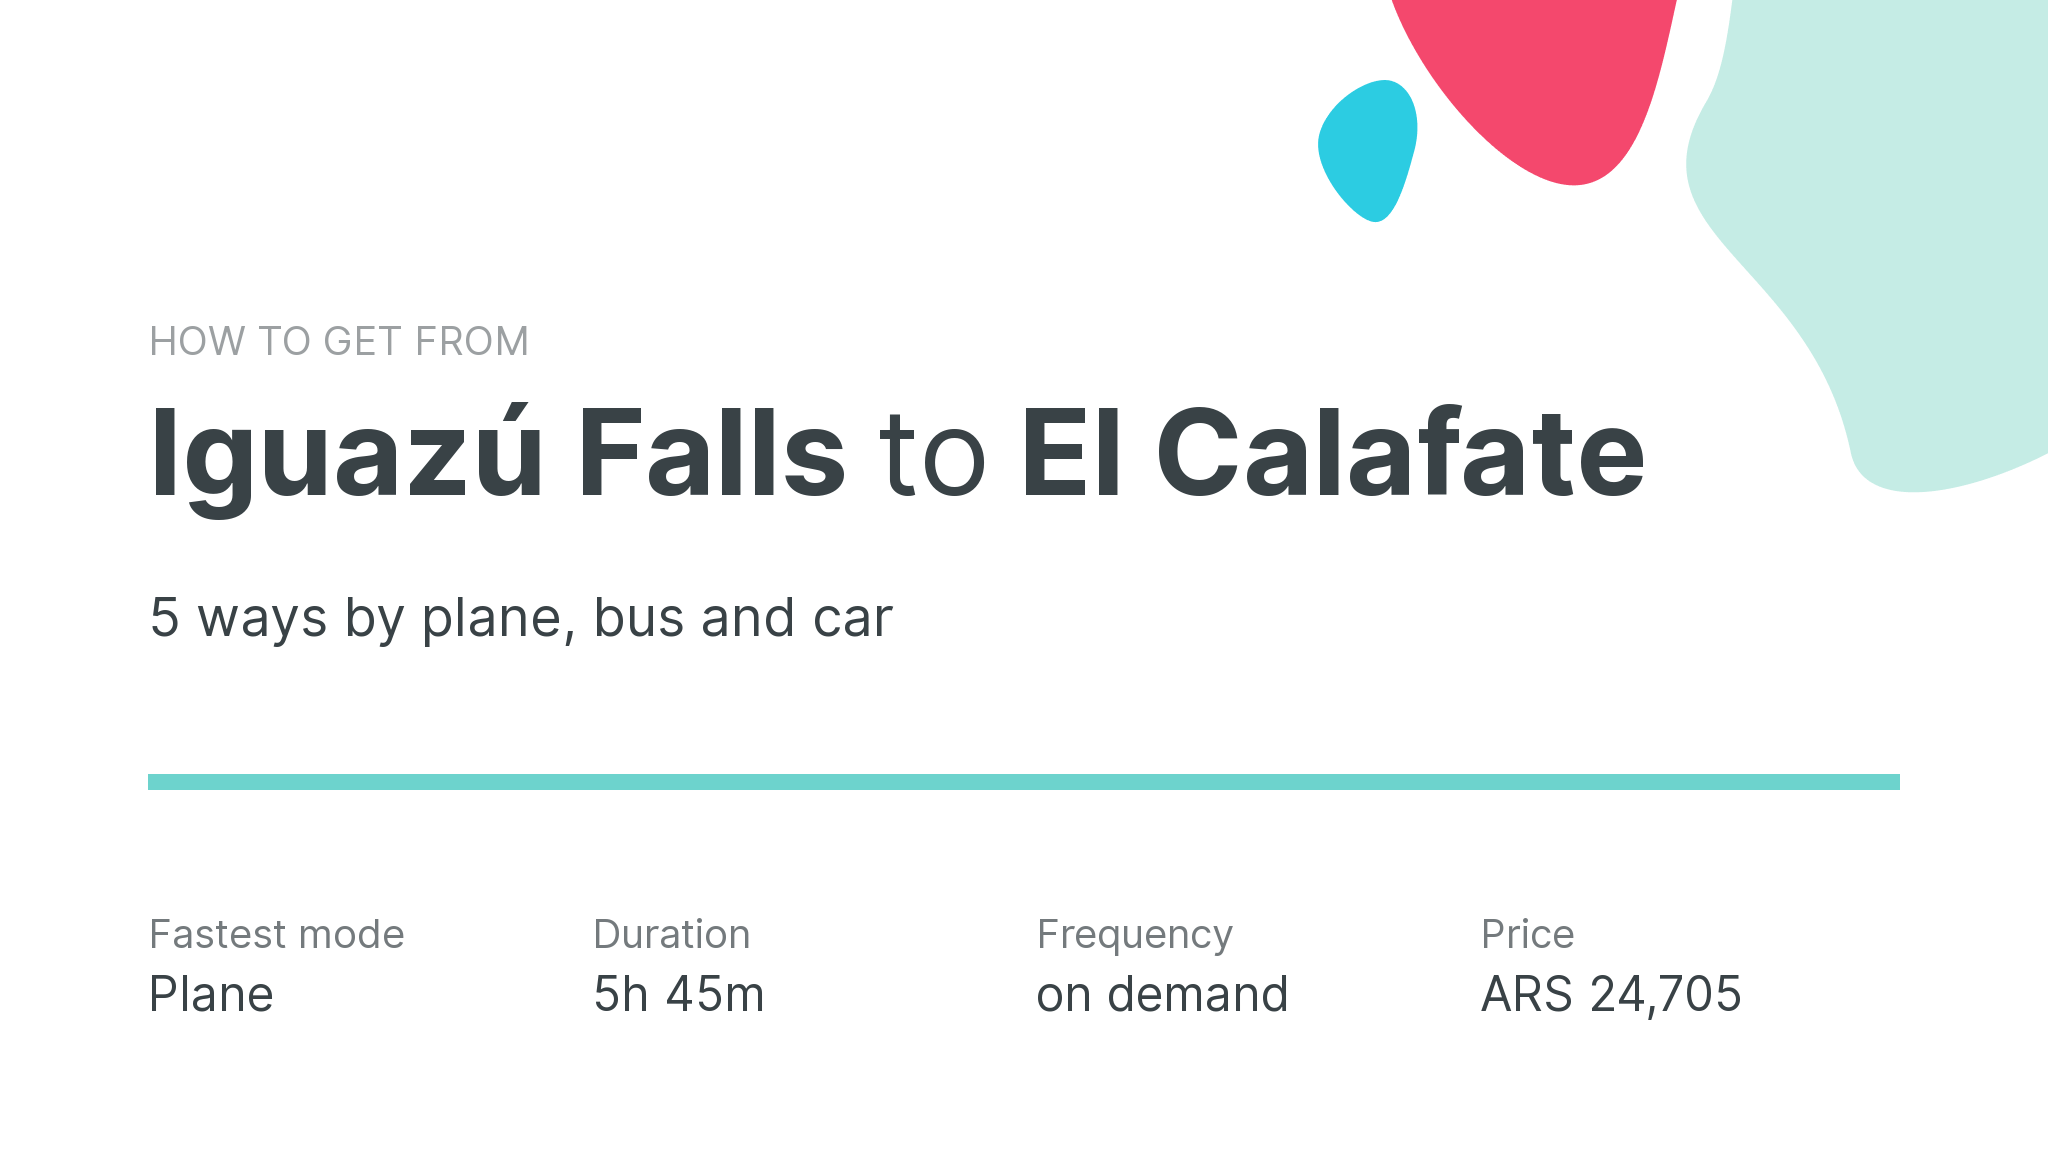 How do I get from Iguazú Falls to El Calafate